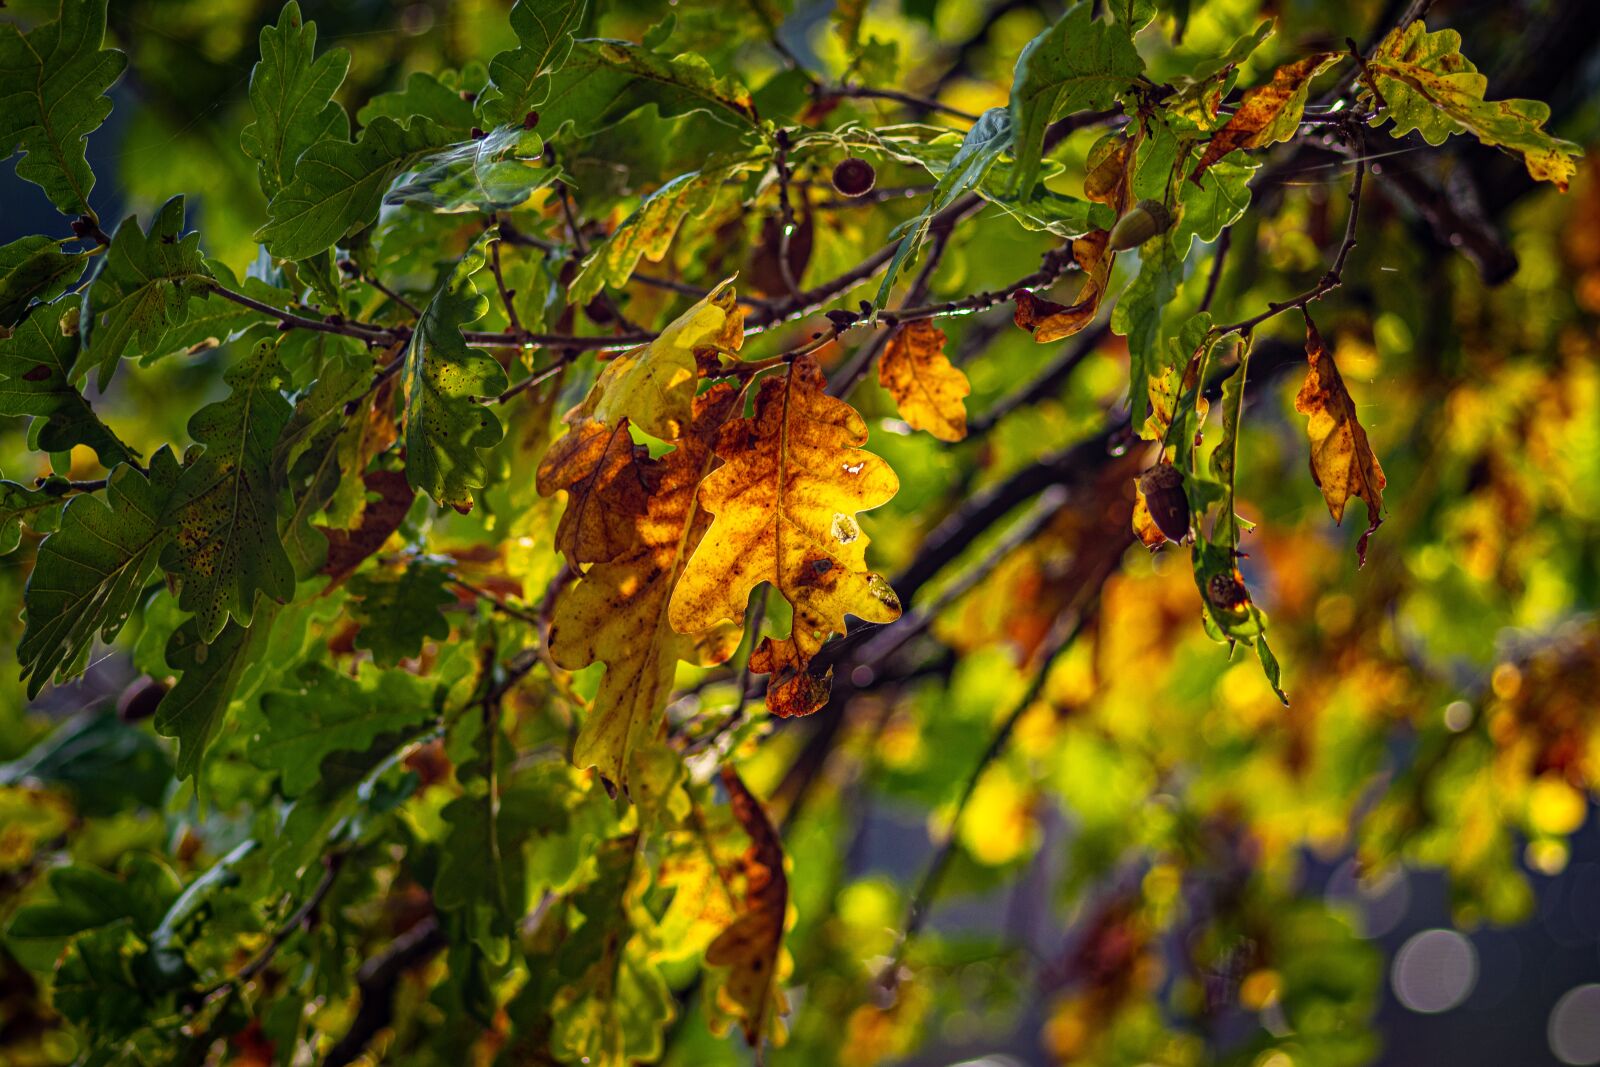 Canon EOS 80D sample photo. "Fall foliage, leaves, autumn" photography